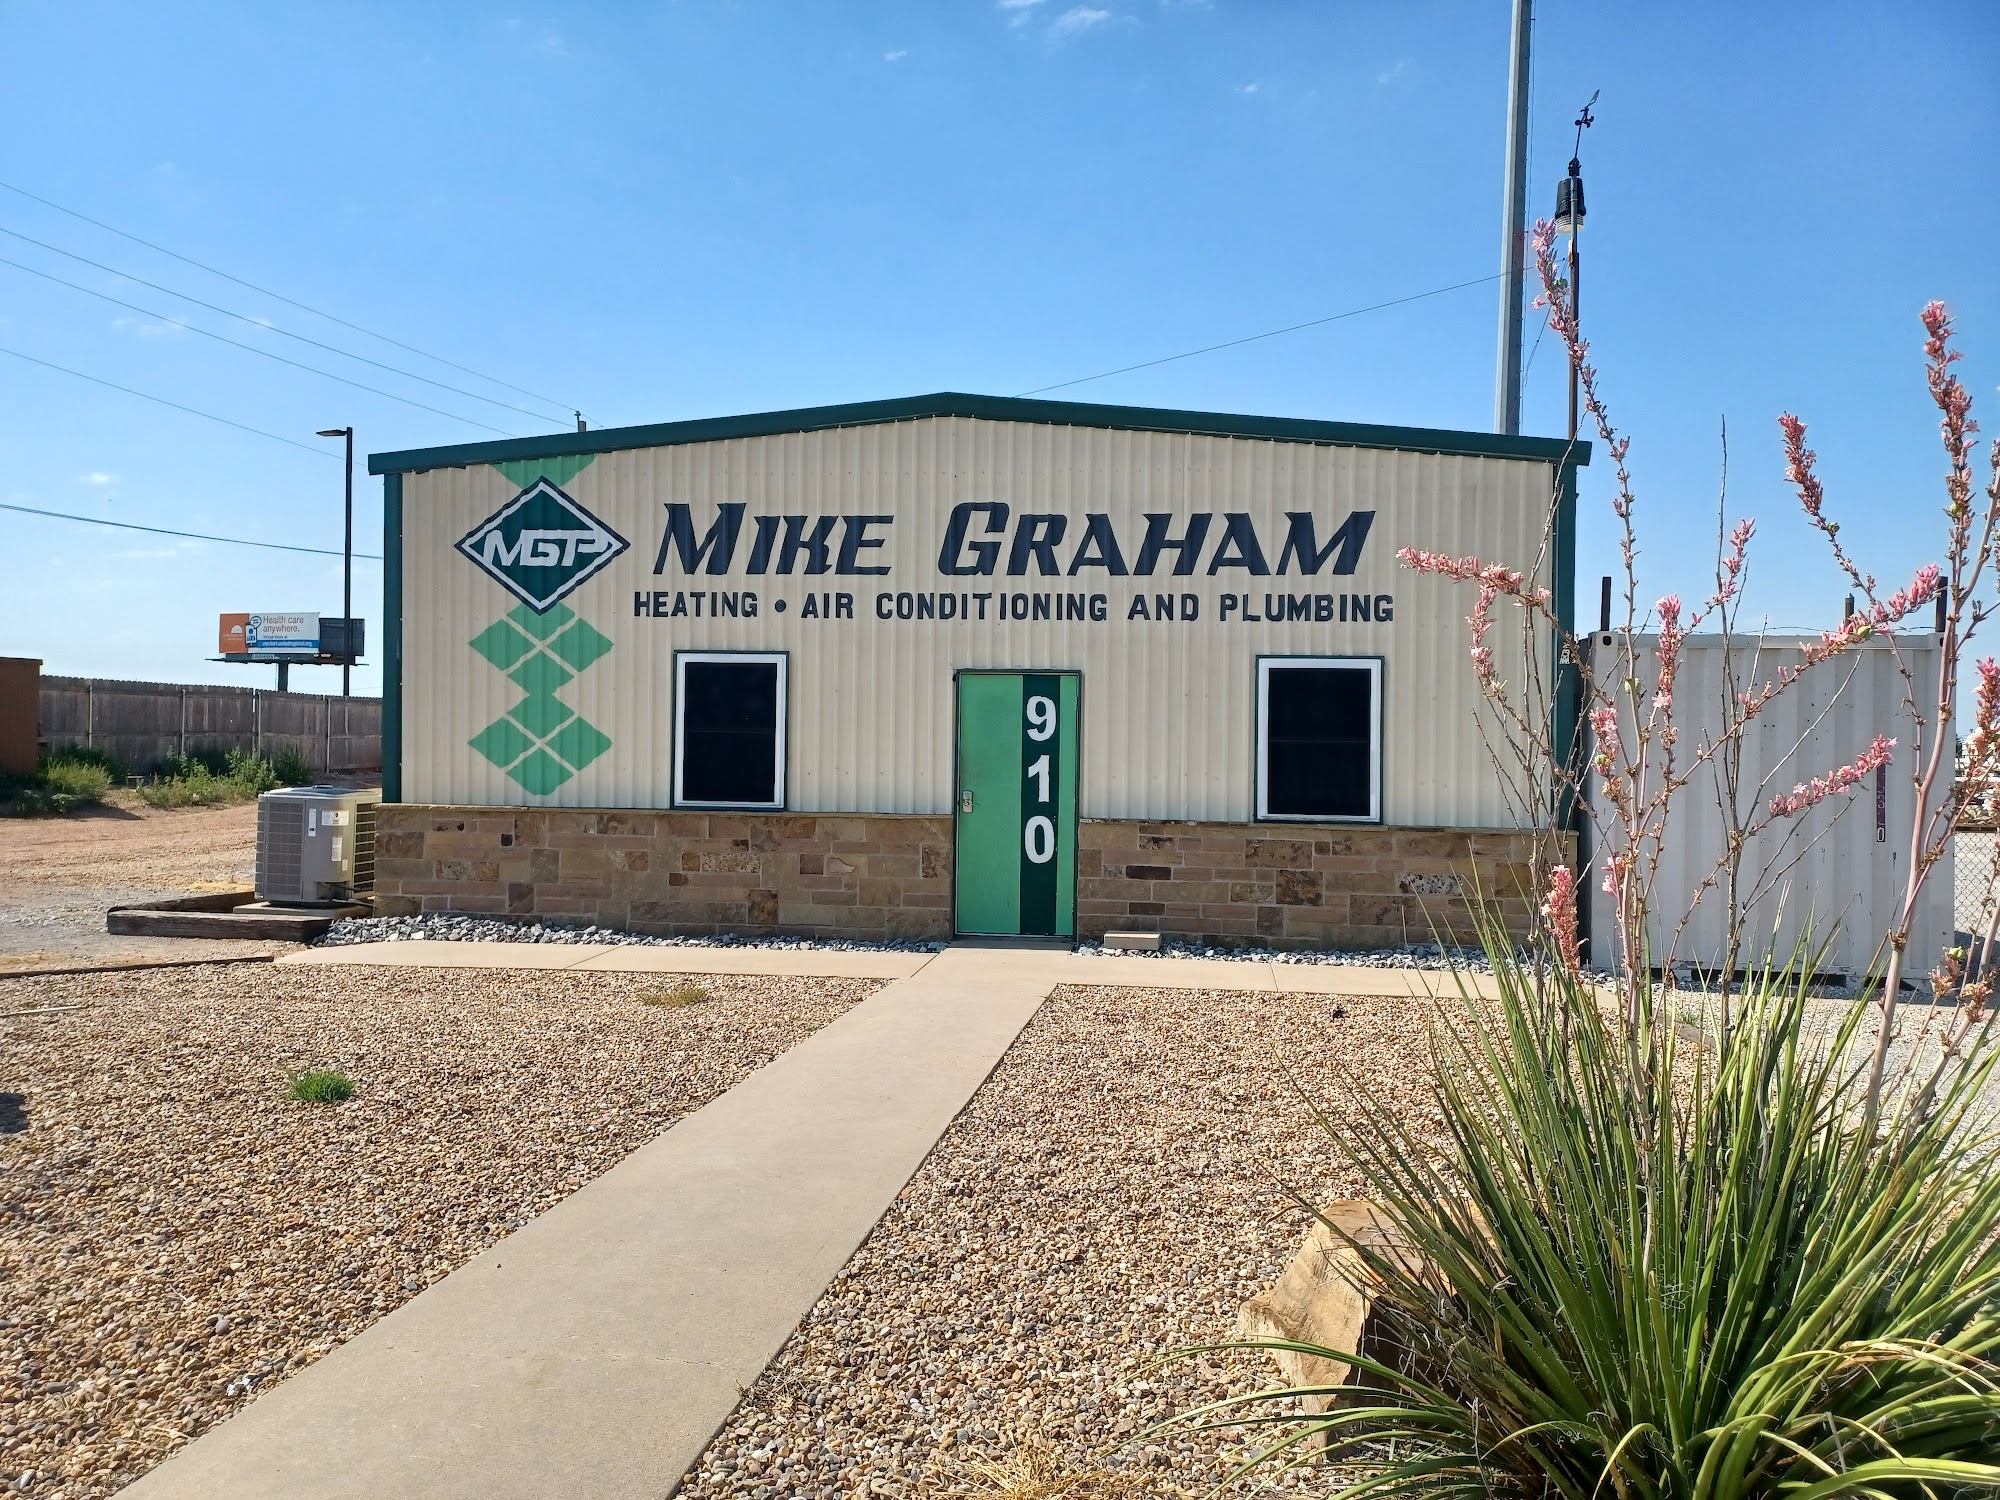 Mike Graham Heating, Air Conditioning & Plumbing 910 Dana, Burkburnett Texas 76354